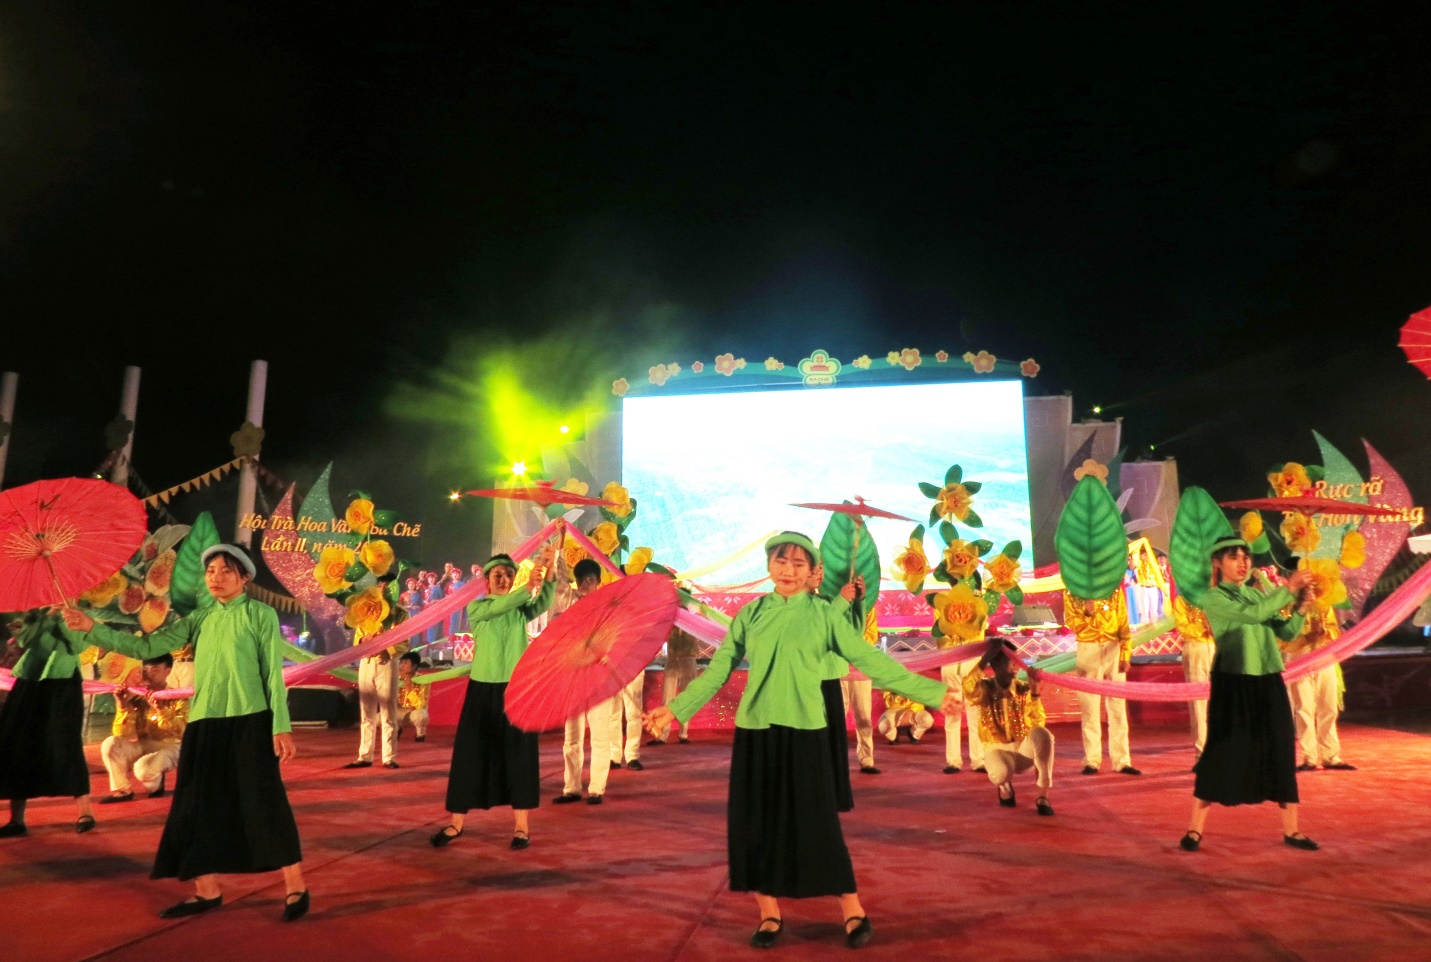 Lễ hội Trà hoa vàng lần thứ III sẽ diễn ra từ ngày  26 – 27/12/2020 tại huyện Ba Chẽ